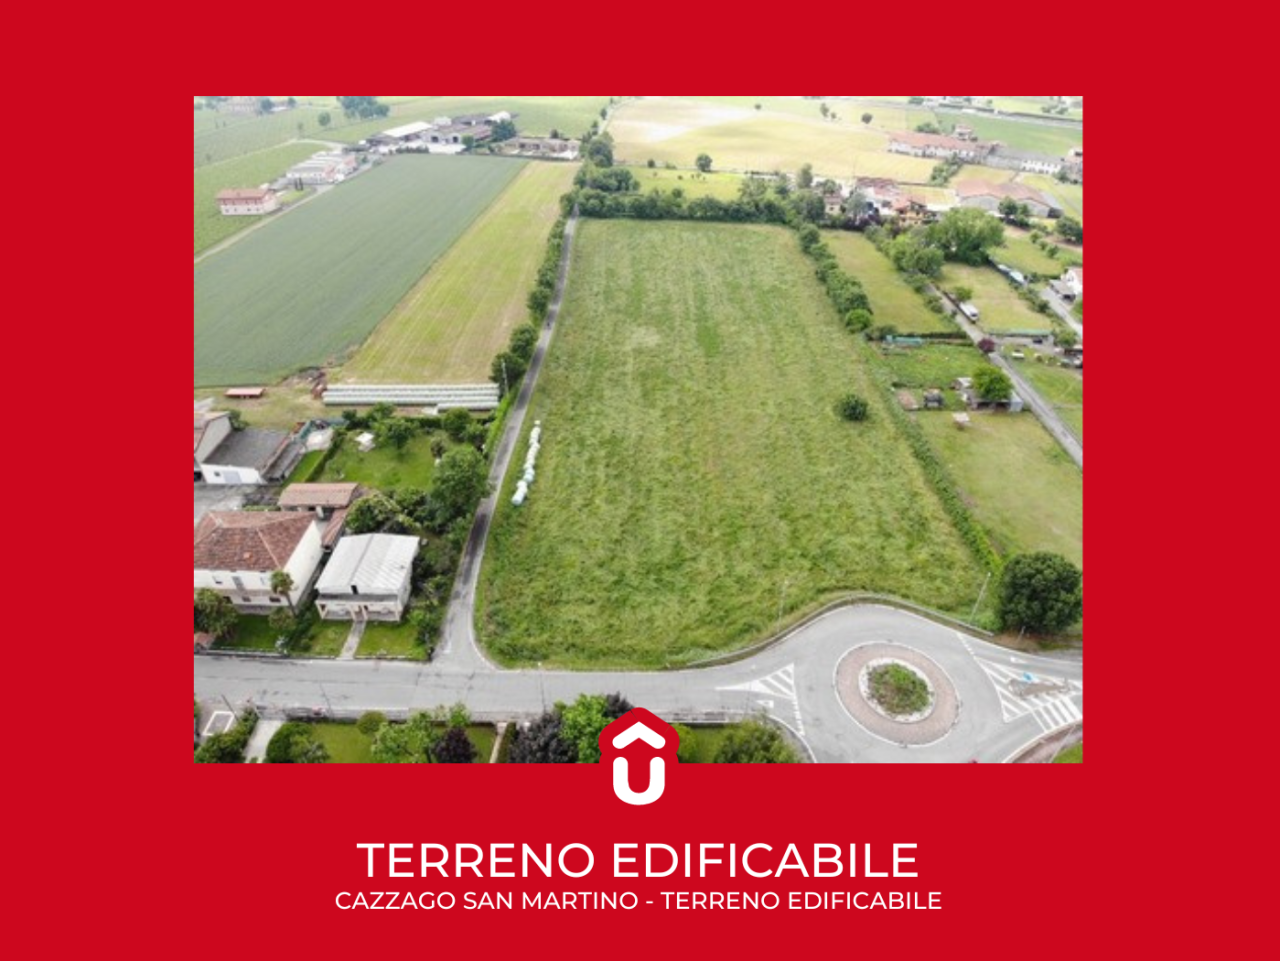 Terreno Edificabile Residenziale in vendita a Cazzago San Martino, 1 locali, prezzo € 350.000 | PortaleAgenzieImmobiliari.it